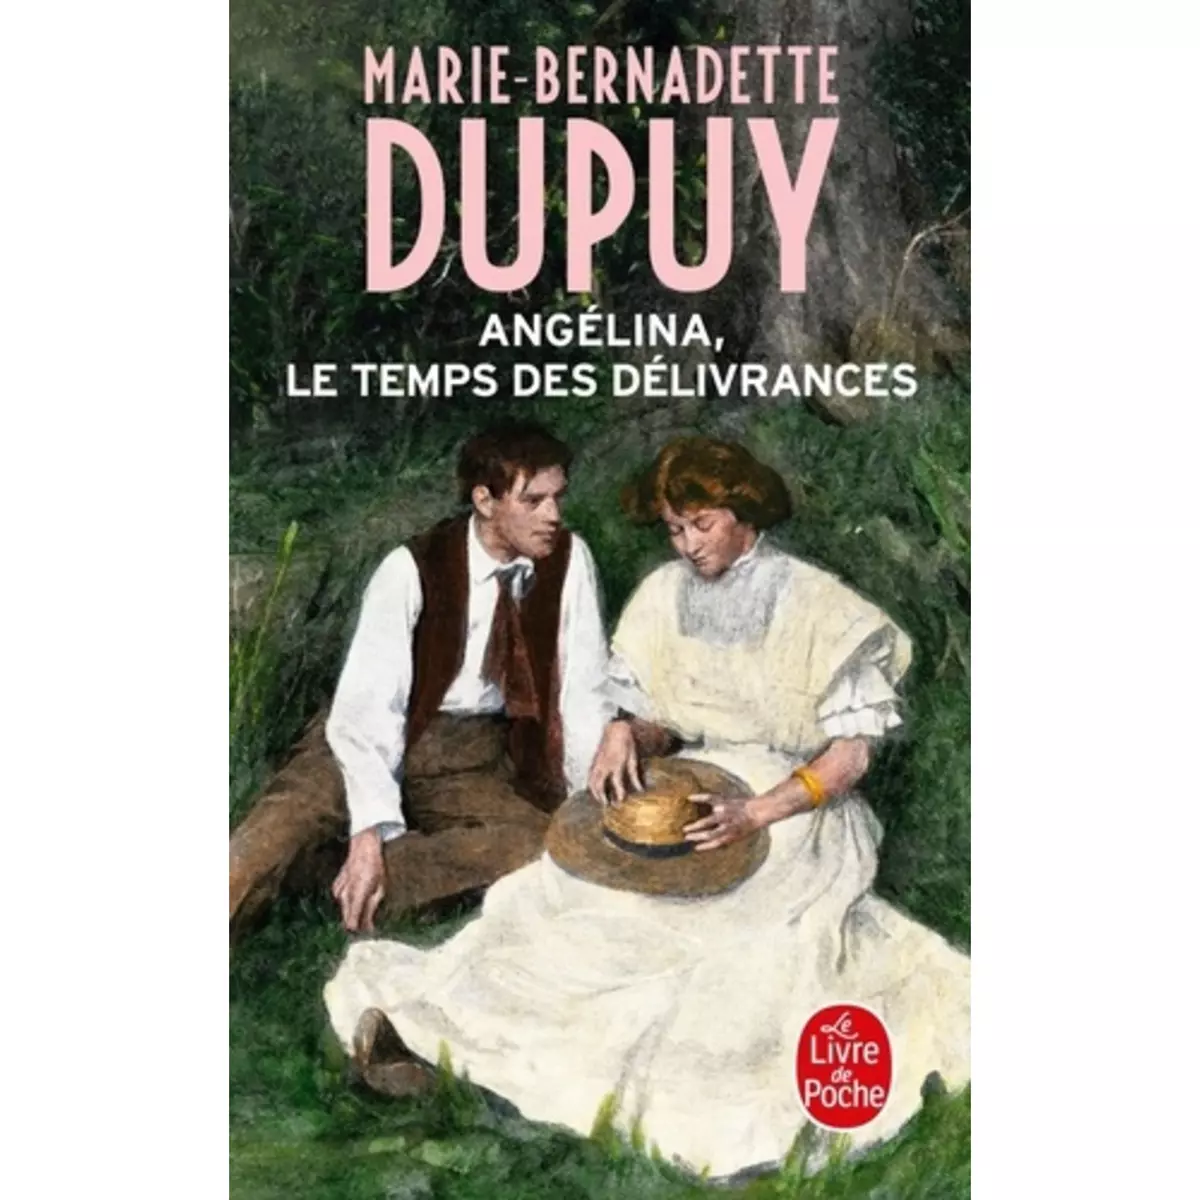  ANGELINA, LE TEMPS DES DELIVRANCES, Dupuy Marie-Bernadette